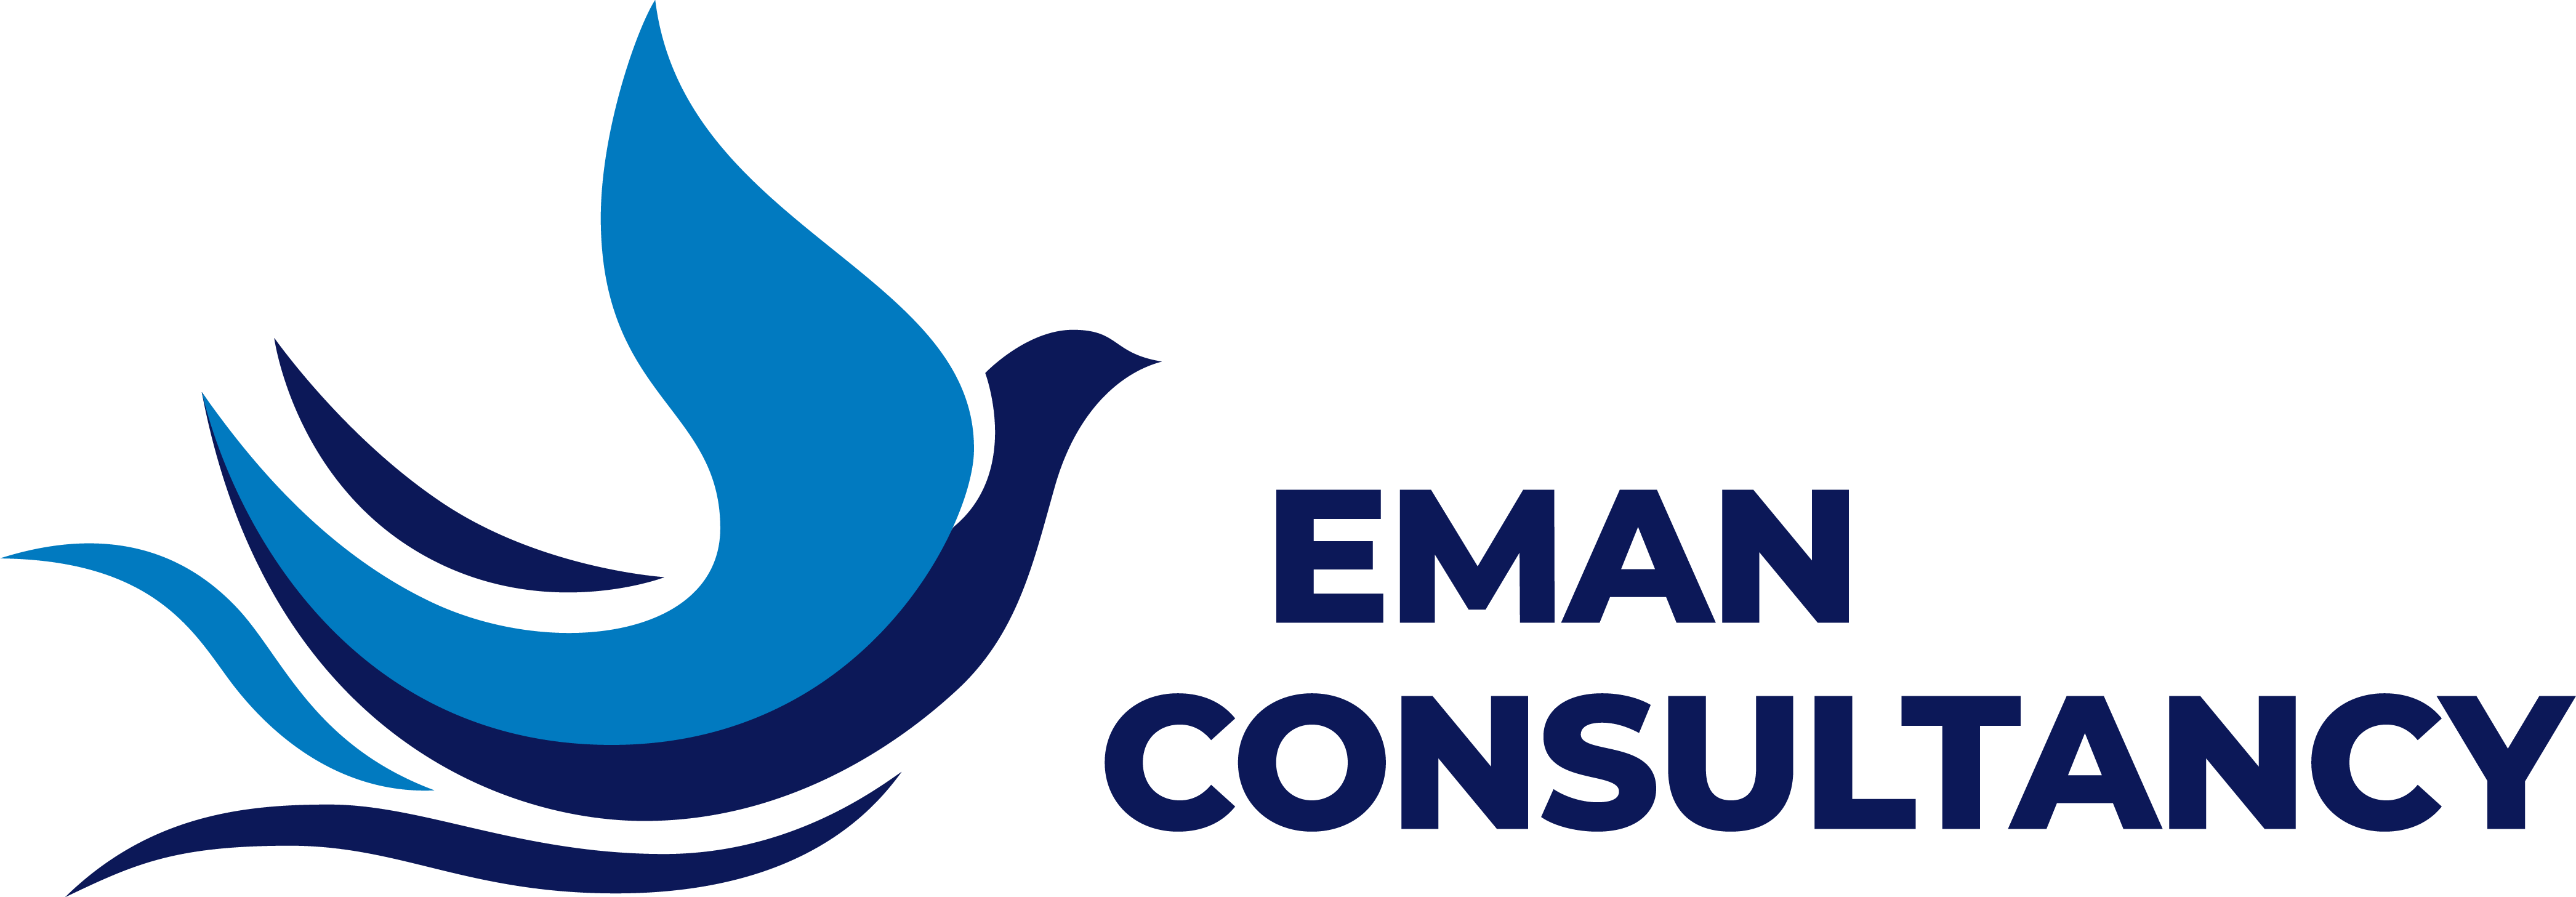 Eman Consultancy